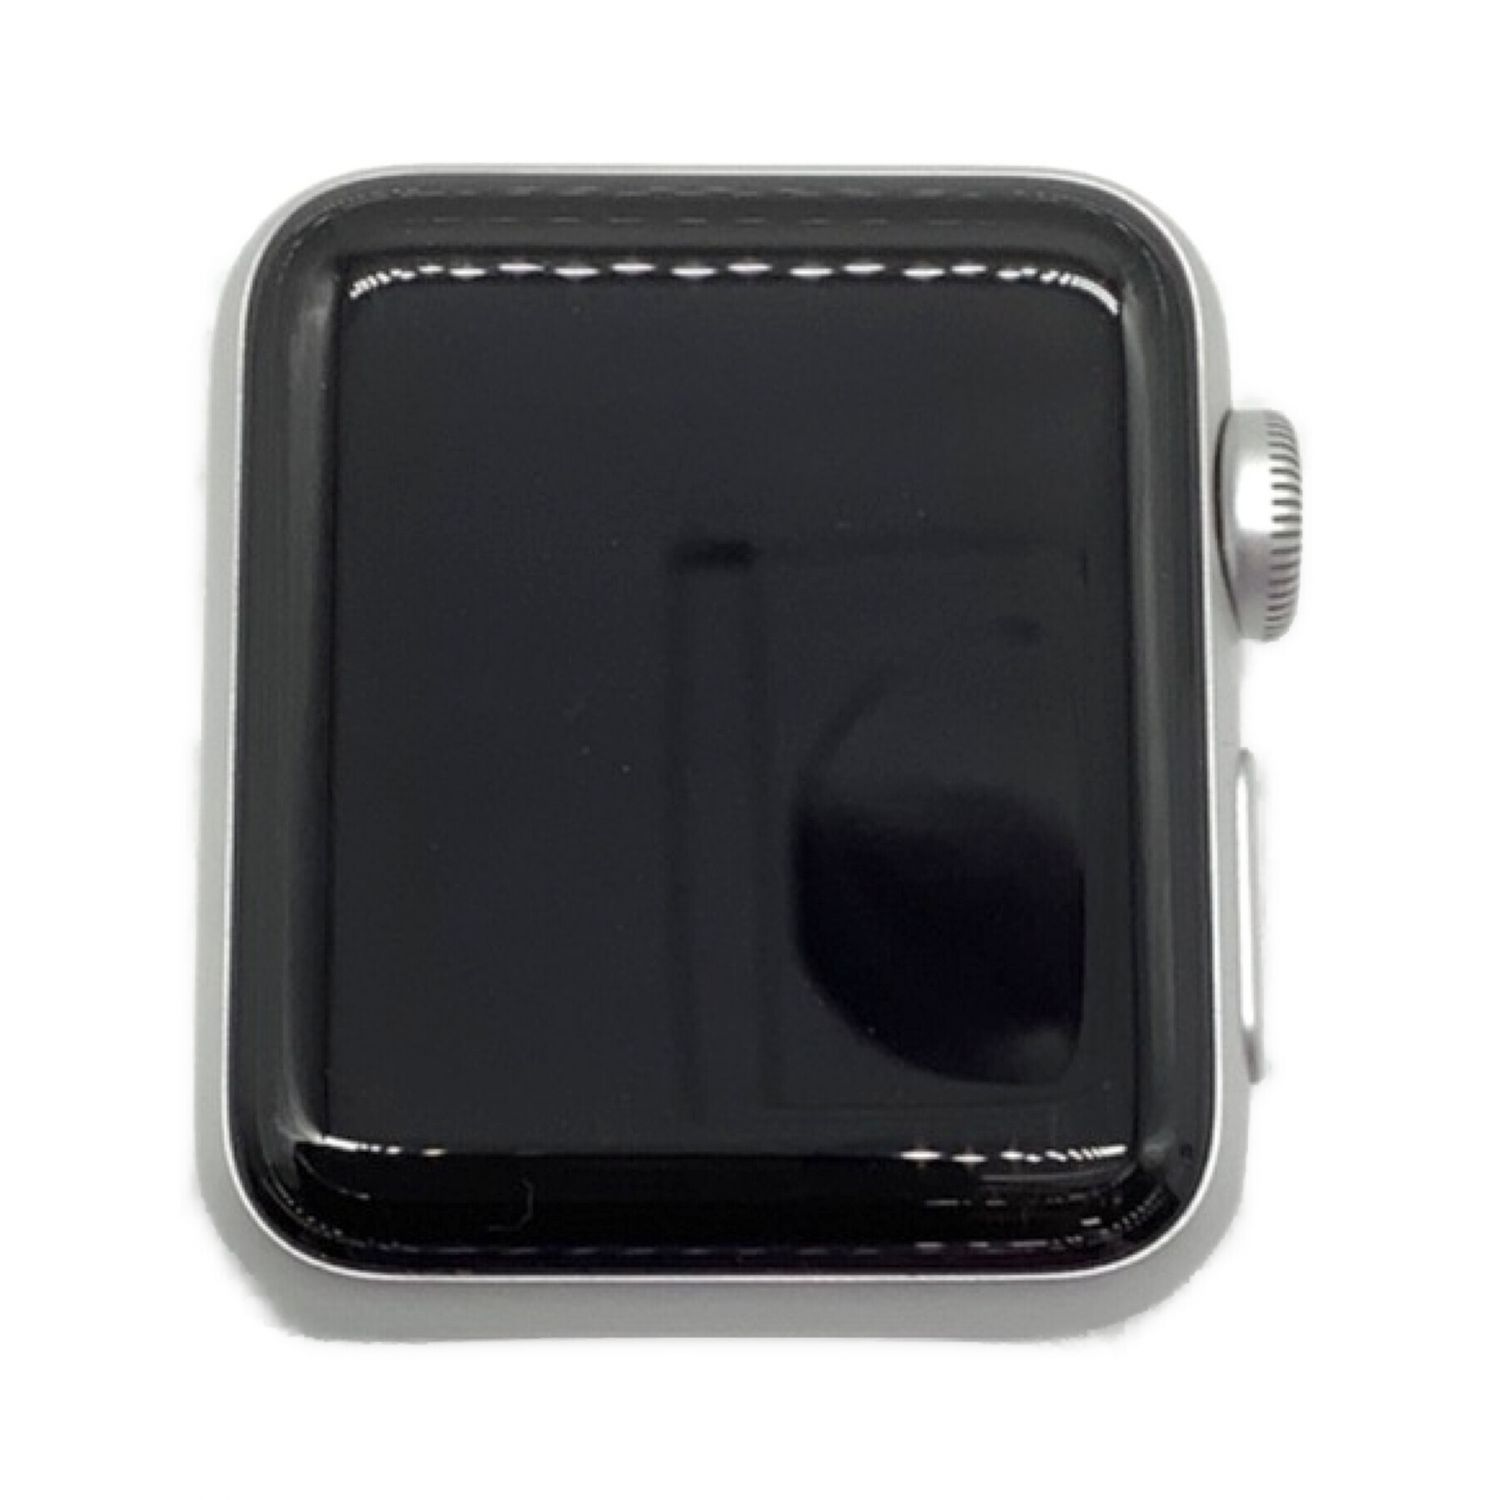 Apple (アップル) Apple Watch Series 3 本体のみ WR-50M GPS 